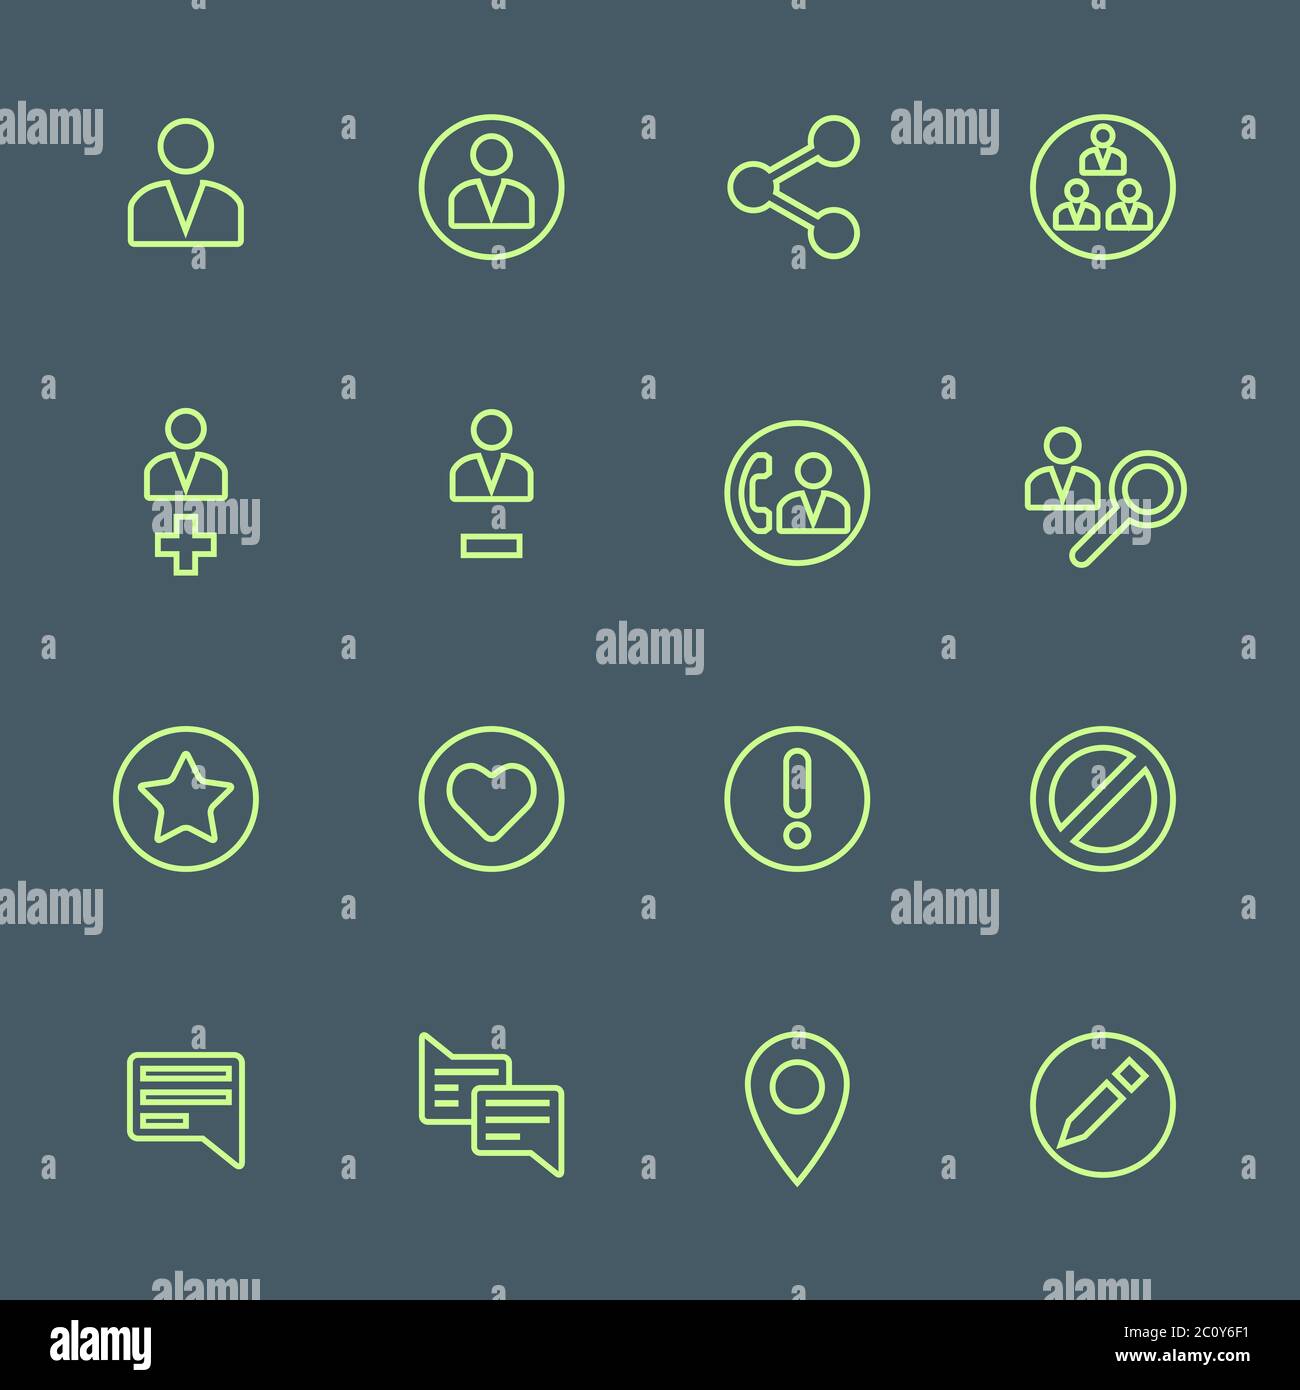 verde resumen varios iconos de acciones de redes sociales conjunto Foto de stock